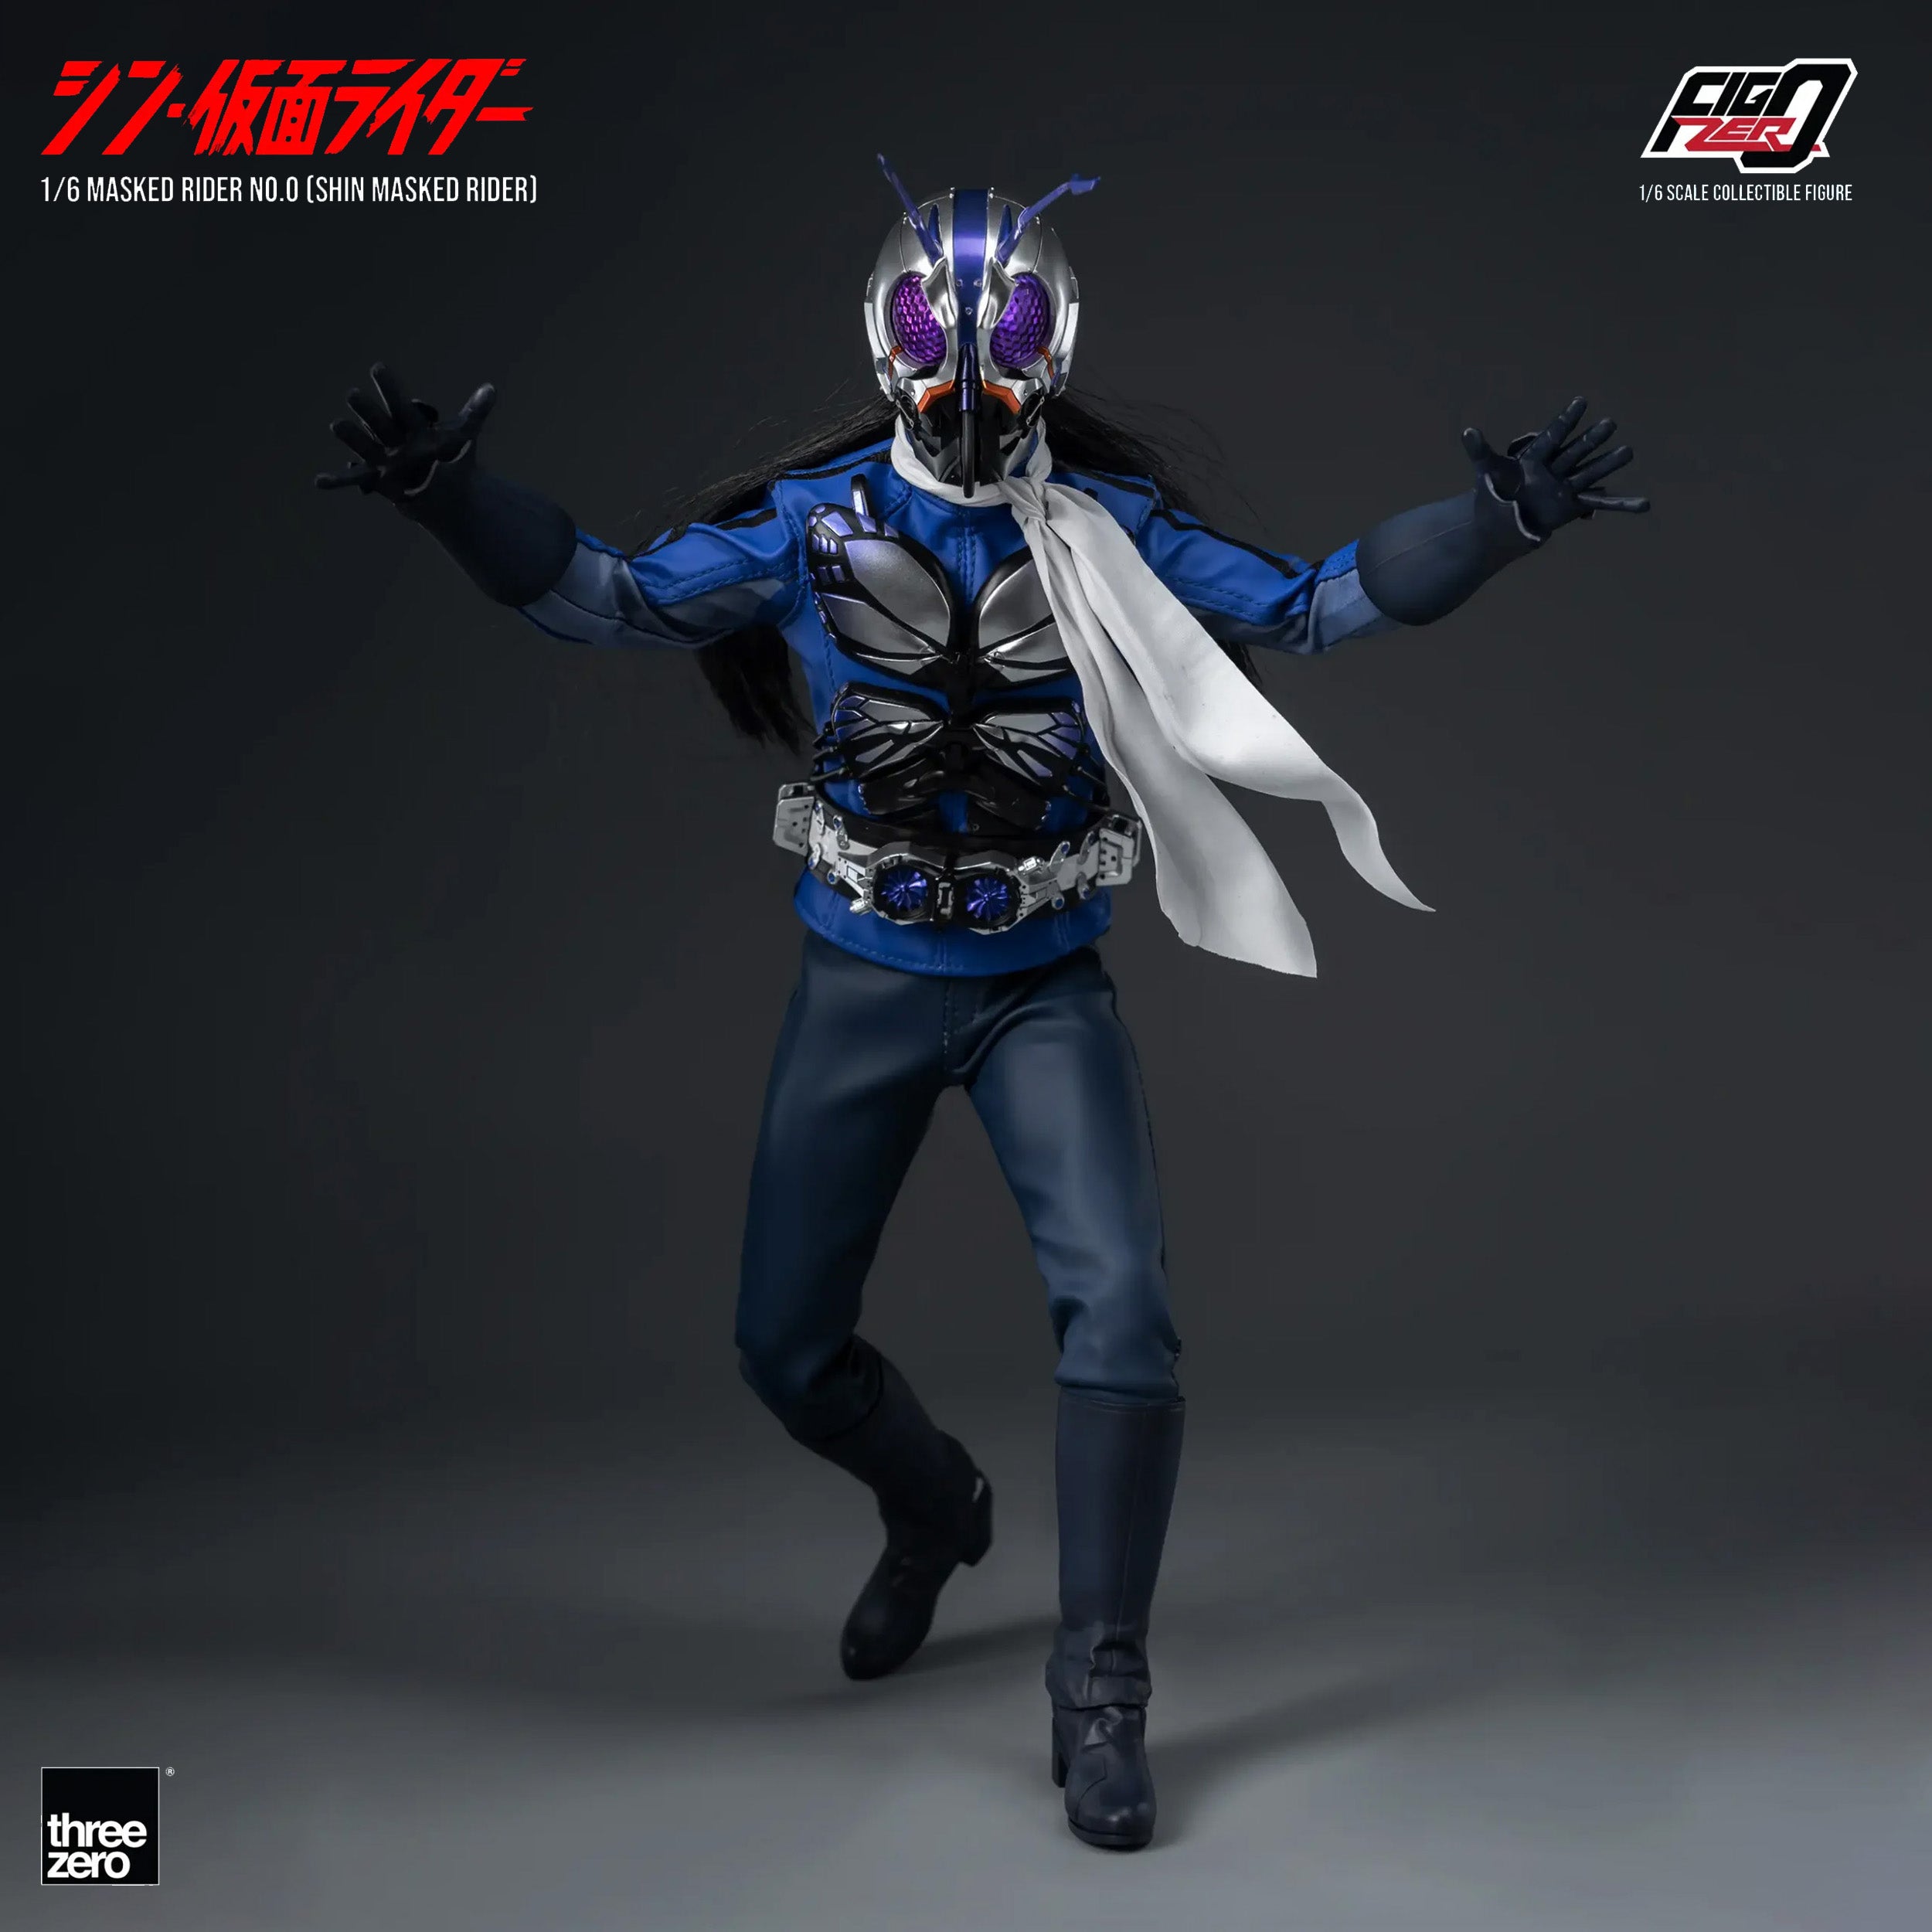 threezero - FigZero - Shin Masked Rider - Masked Rider No. 0 (1/6 Scale) - Marvelous Toys